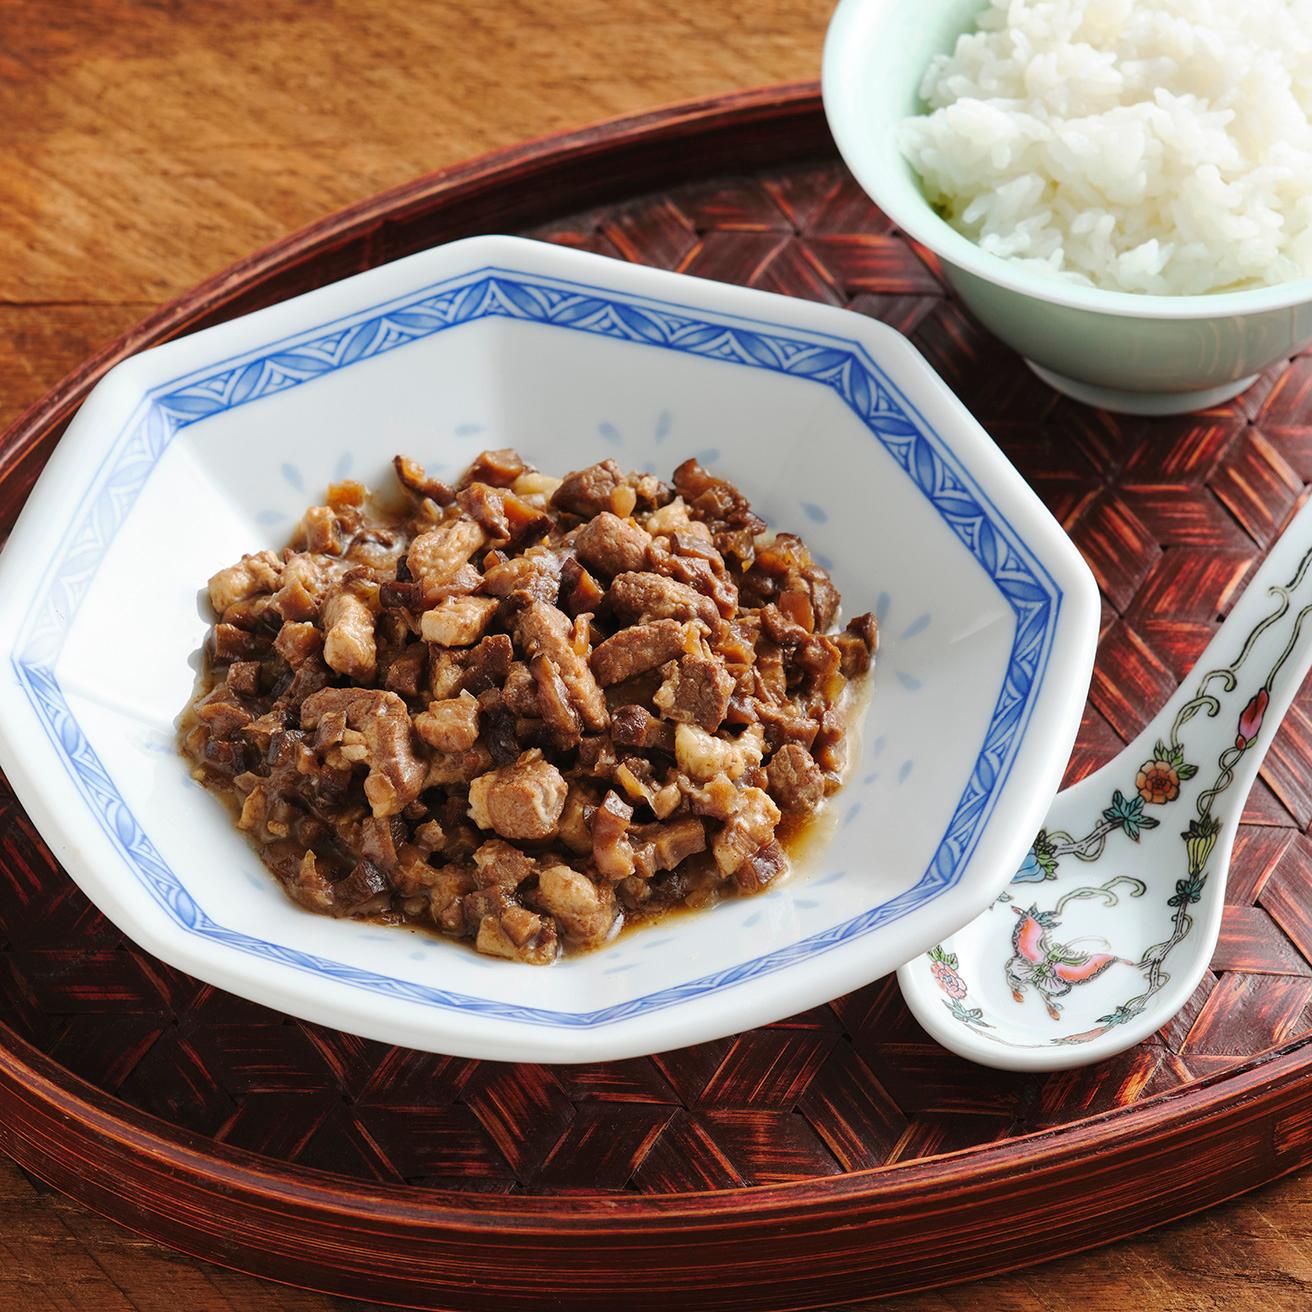 豚バラ肉を醤油と砂糖で甘辛く味付けした、台湾の人気メニュー《魯肉飯（ルーローハン）》。ほどよく効いたスパイスとやわらかく仕上げた豚バラ肉が食欲をそそる！